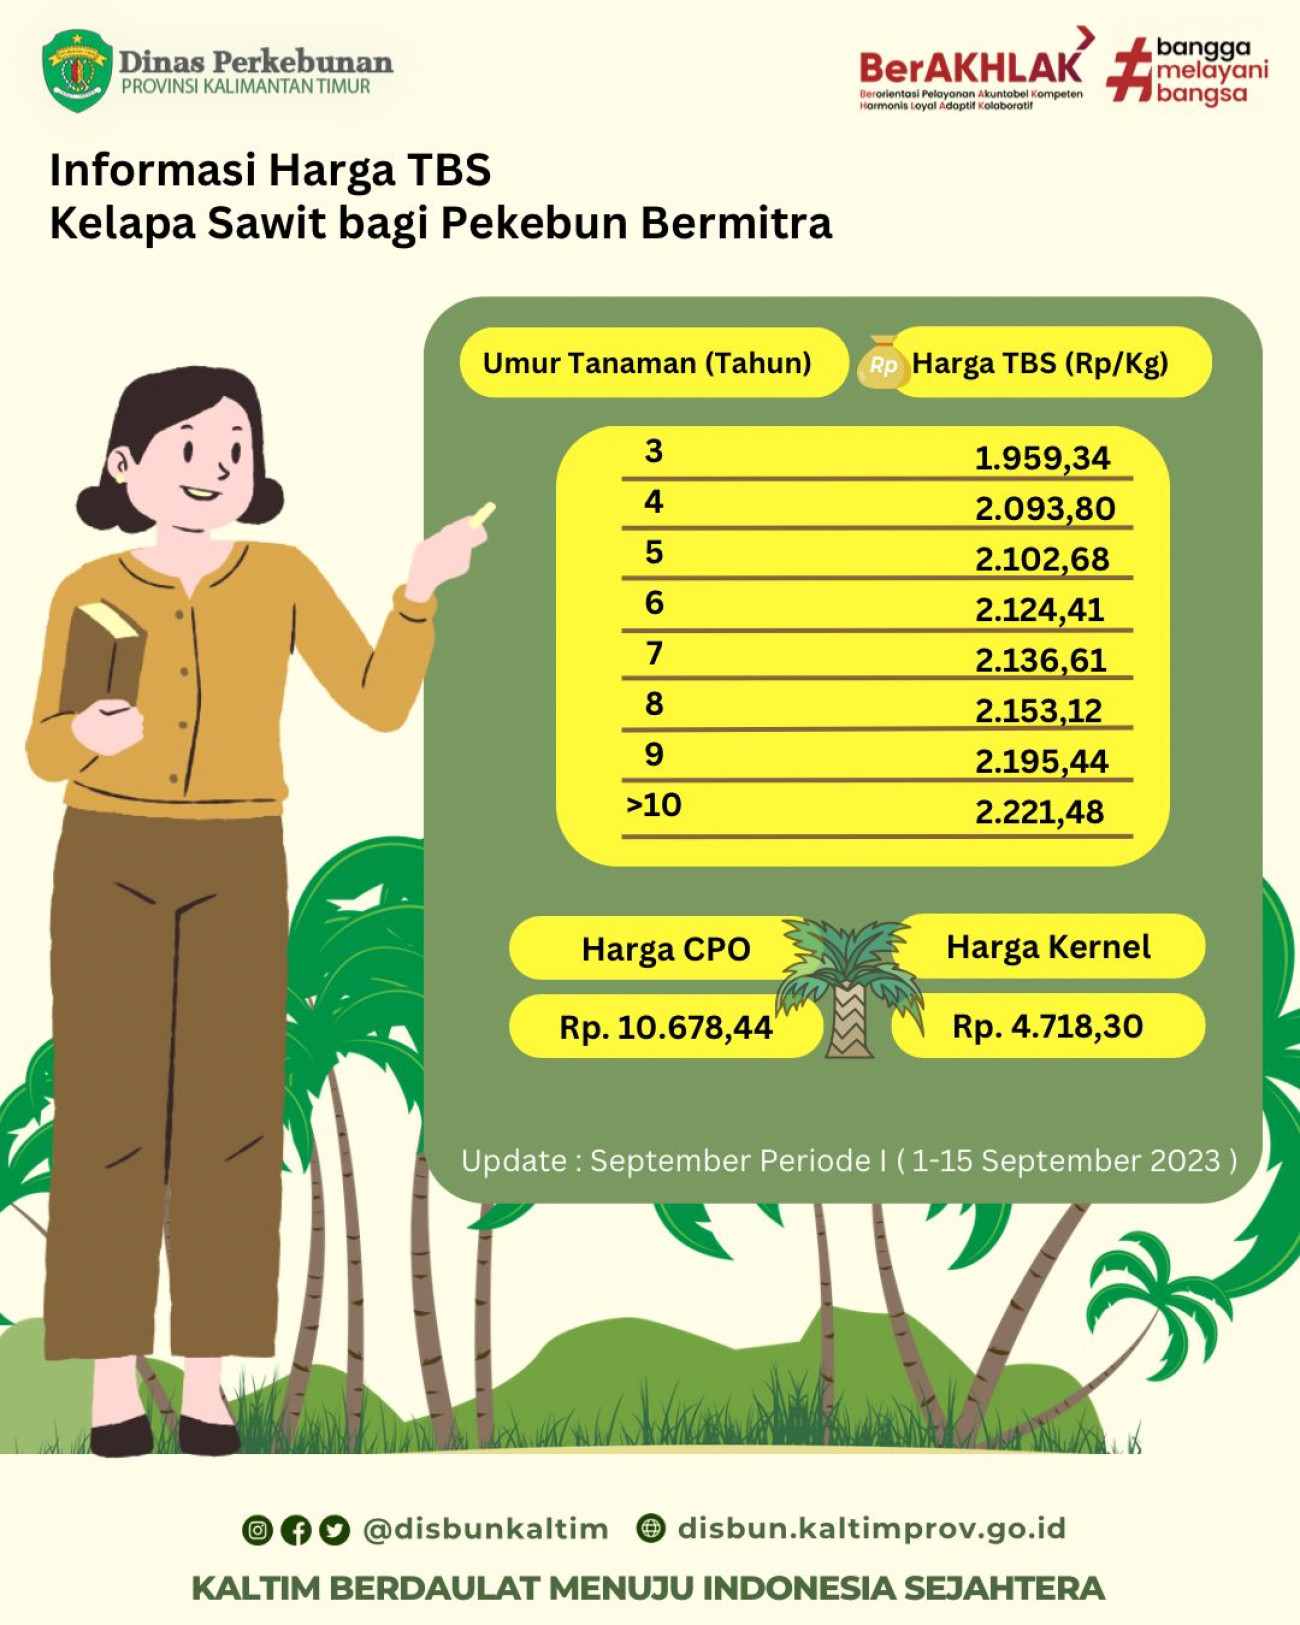 Informasi Harga TBS Kelapa Sawit Bagi Pekebun Bermitra Periode 1 - 15 September 2023